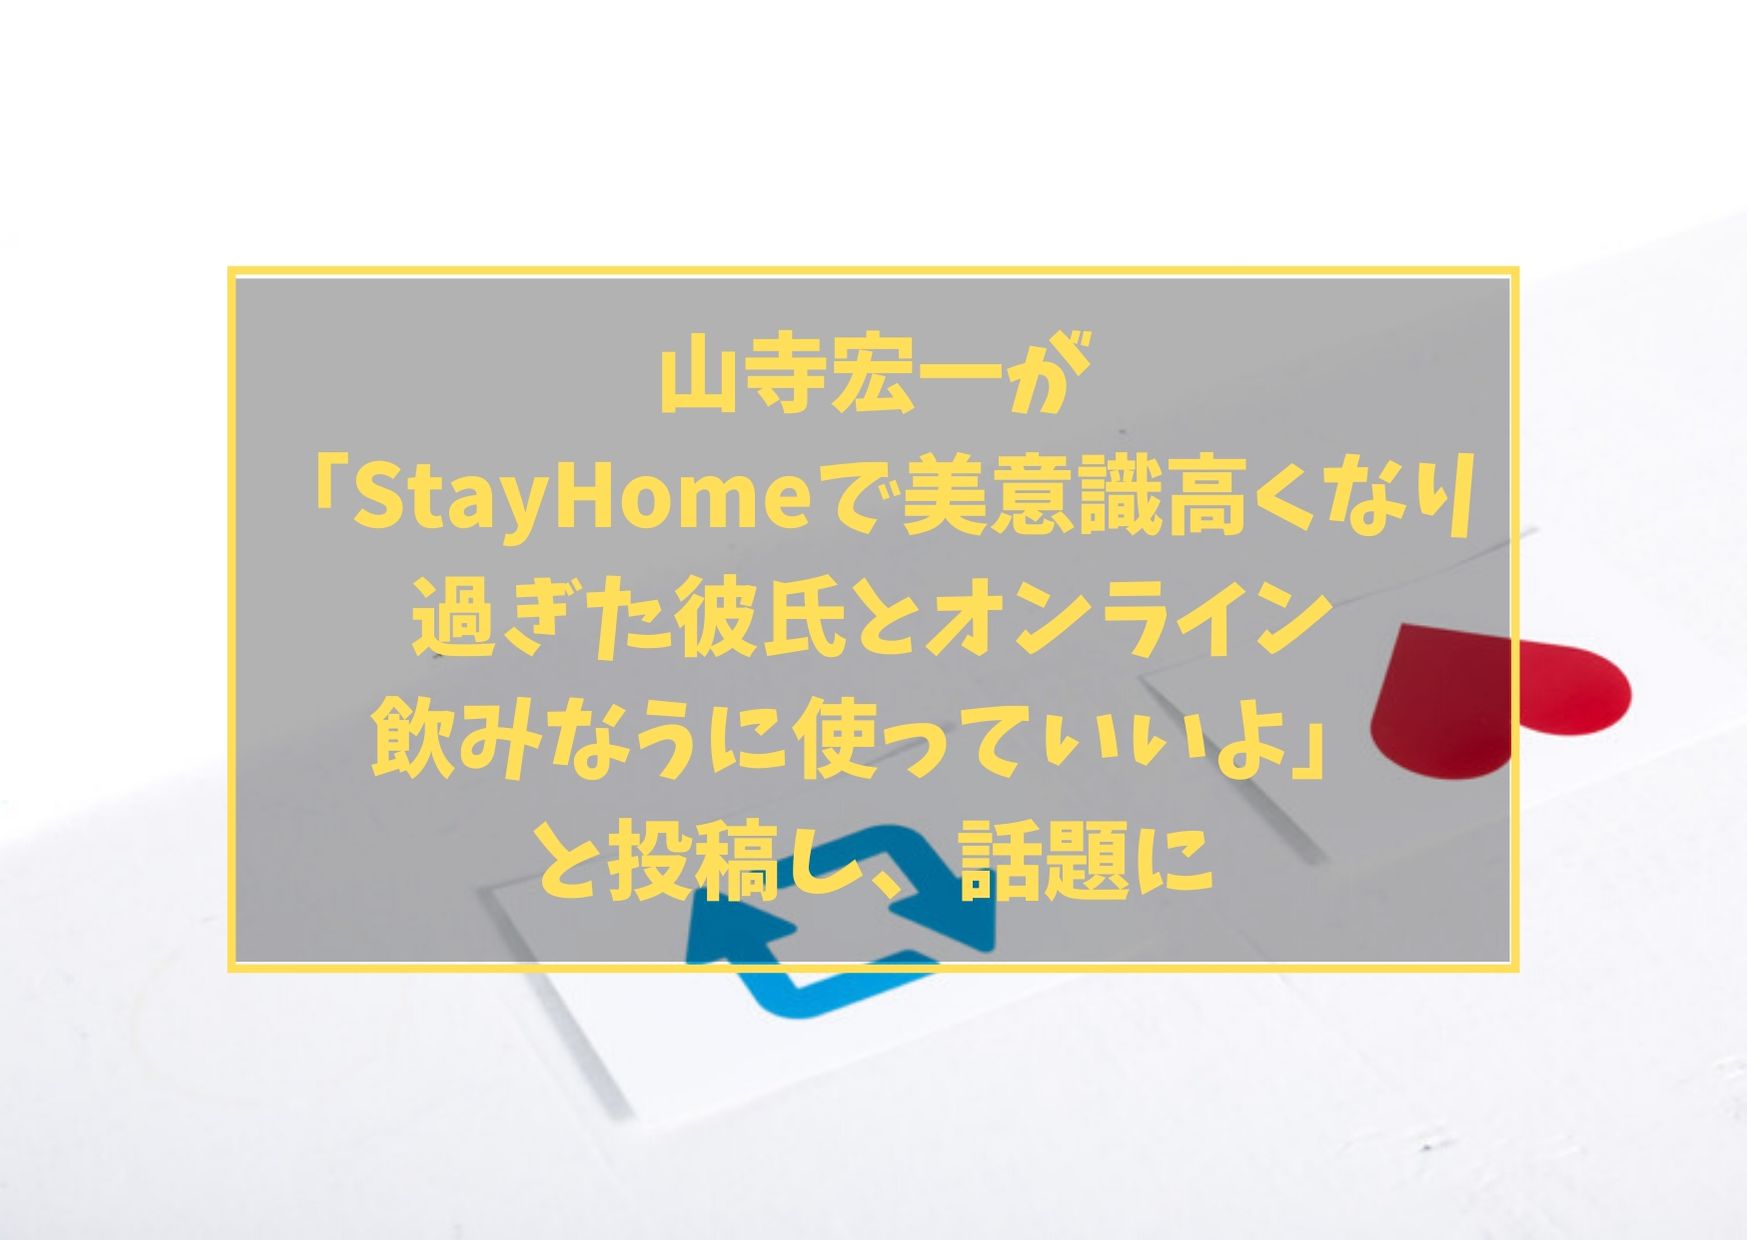 山寺宏一が「StayHomeで美意識高くなり過ぎた彼氏とオンライン飲みなうに使っていいよ」と投稿し、話題に